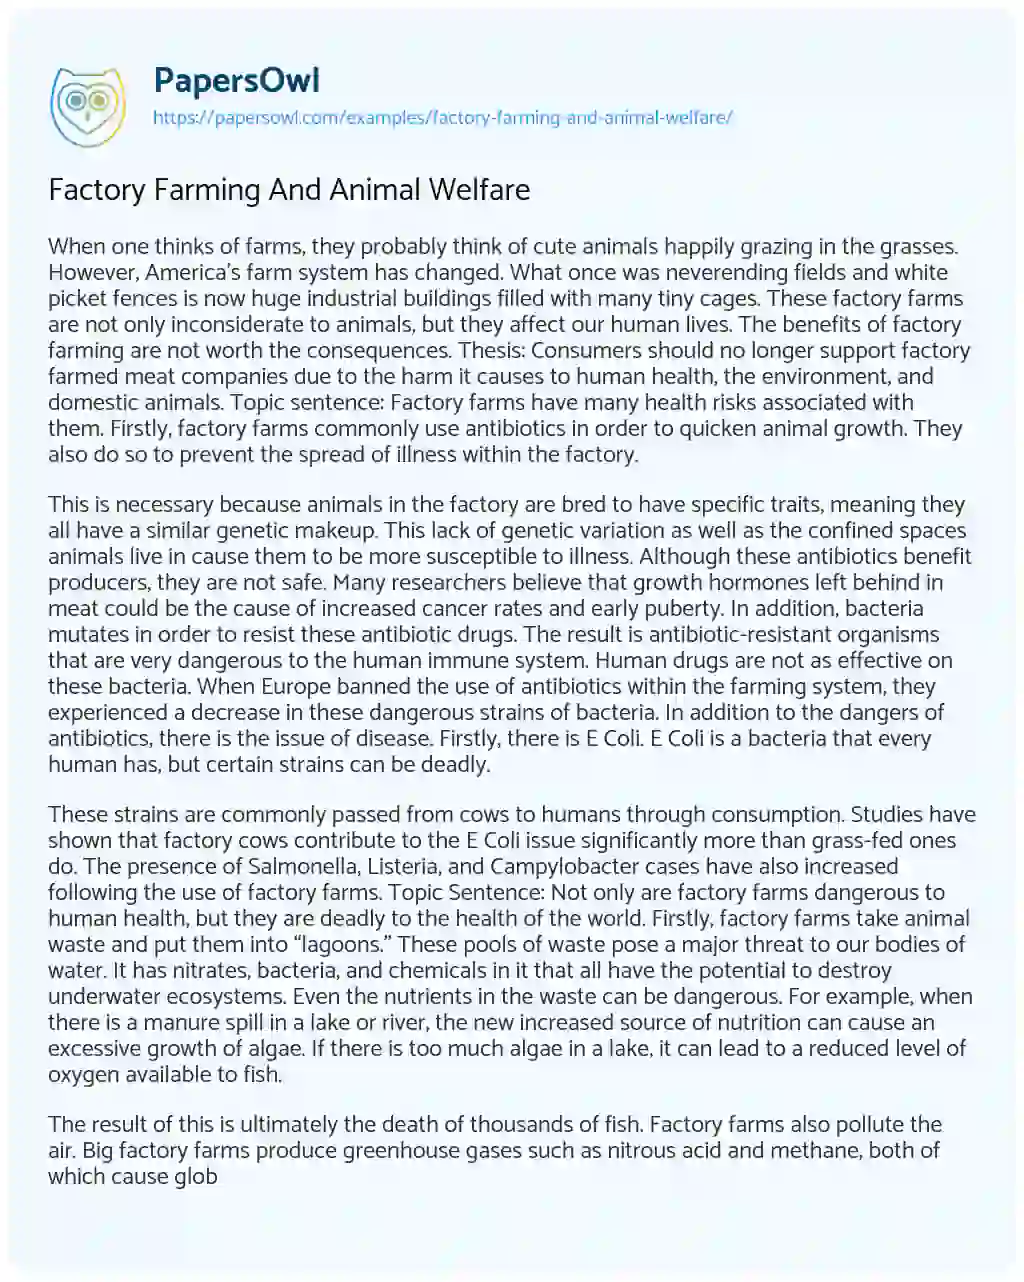 argumentative essay about factory farming